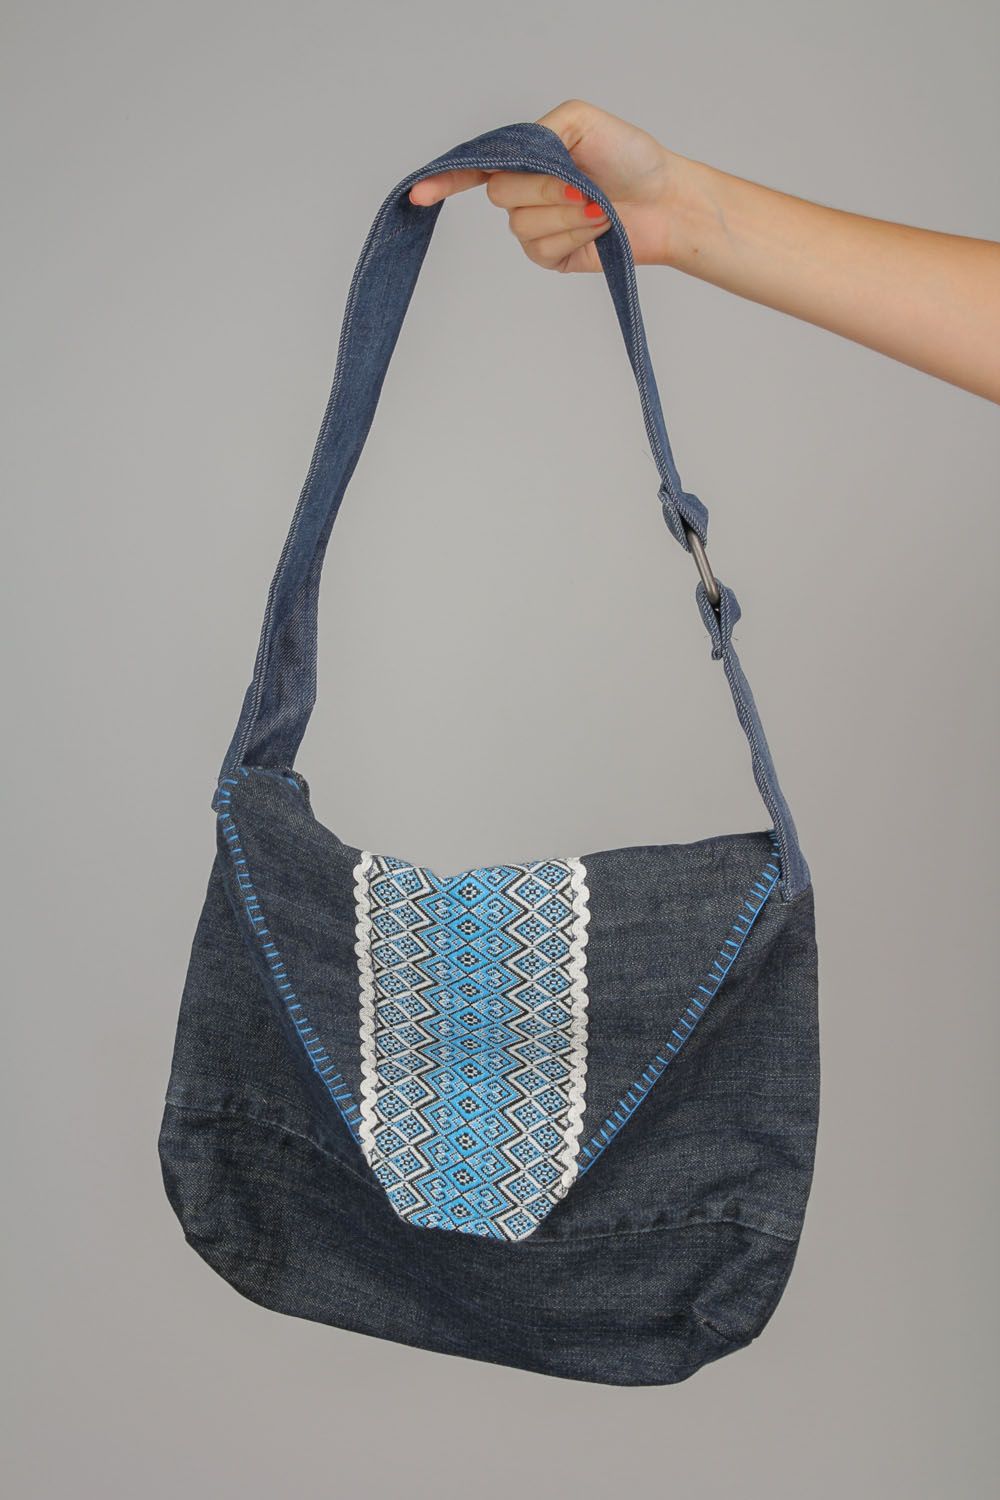 Gros sac à épaule en jean Ornementé fait main bleu original pour femme photo 2